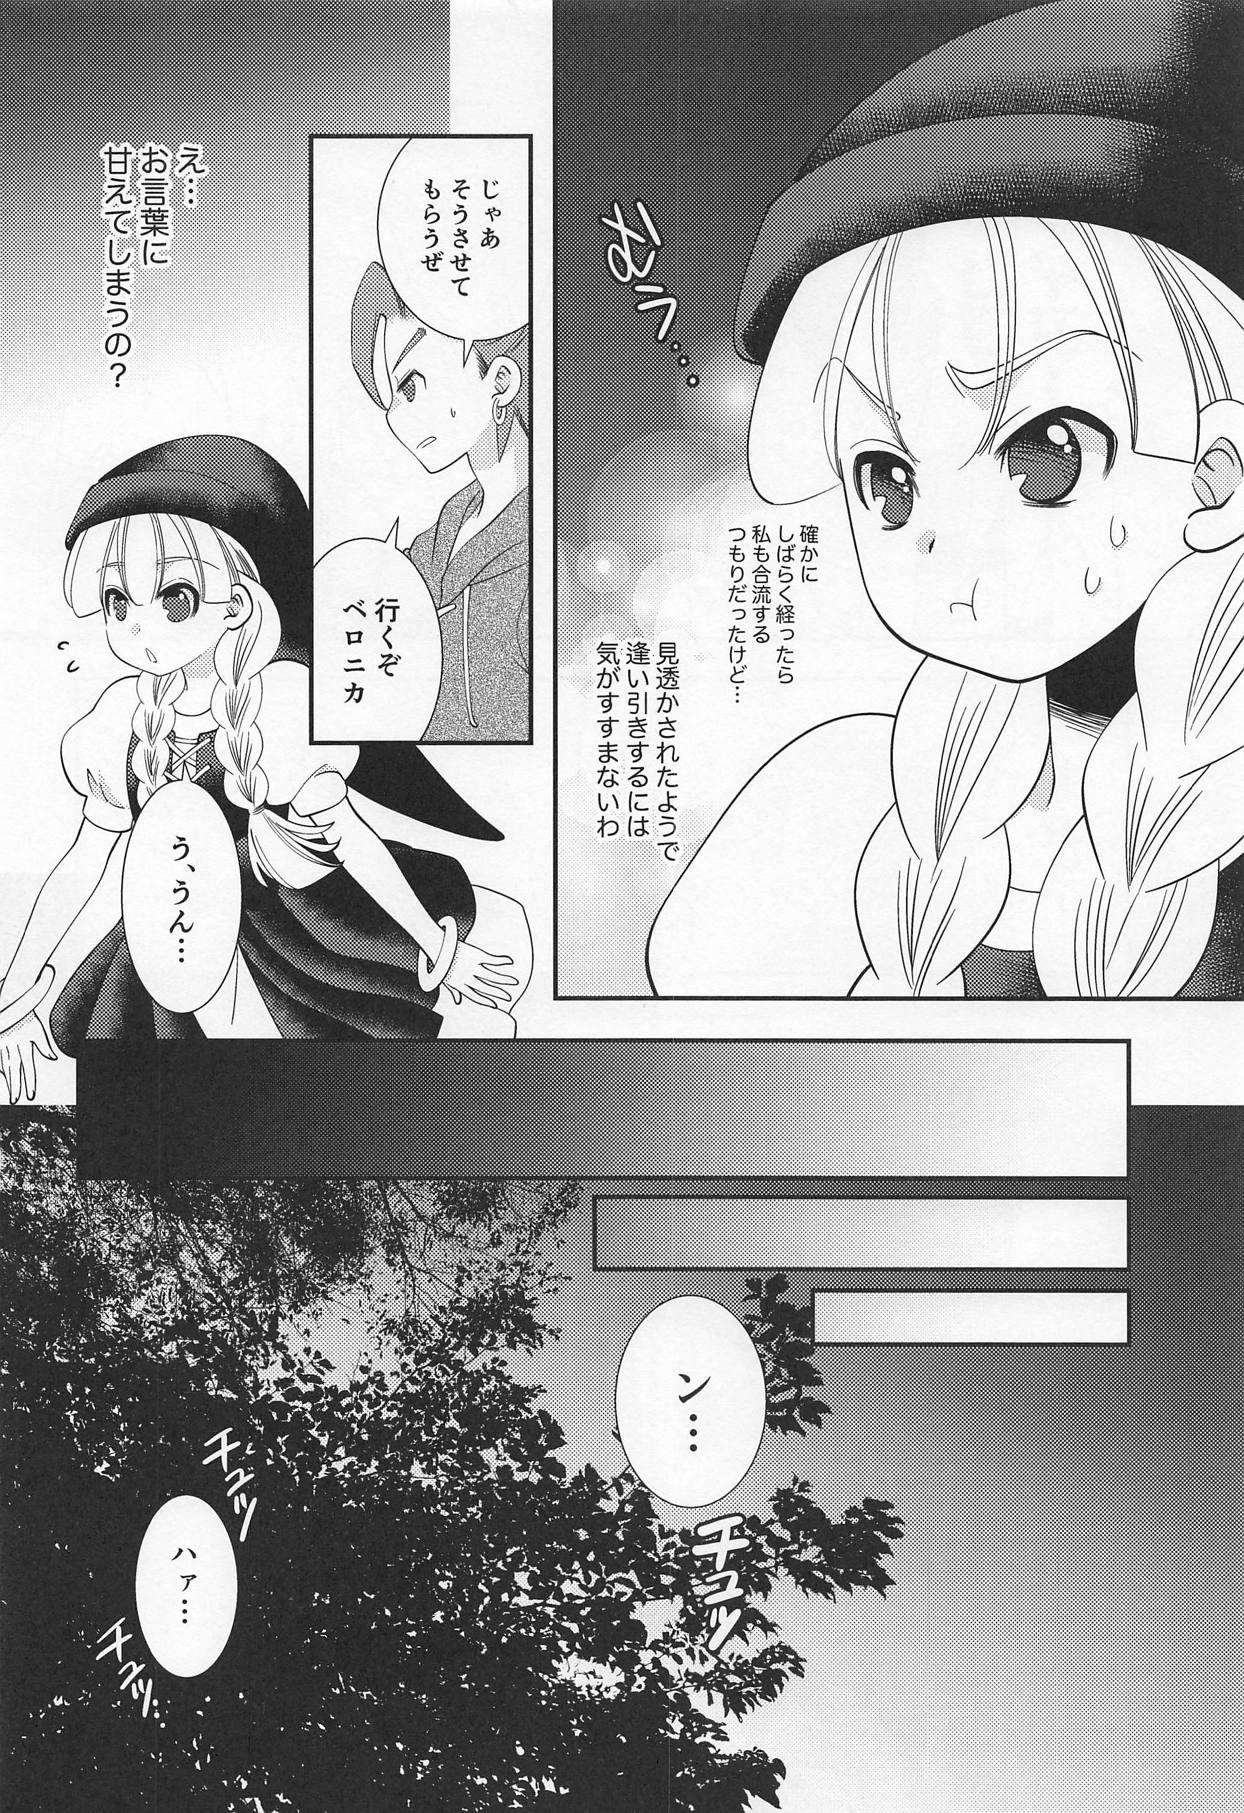 Her Tsuki ga Kirei desu ne - Dragon quest xi Thot - Page 7